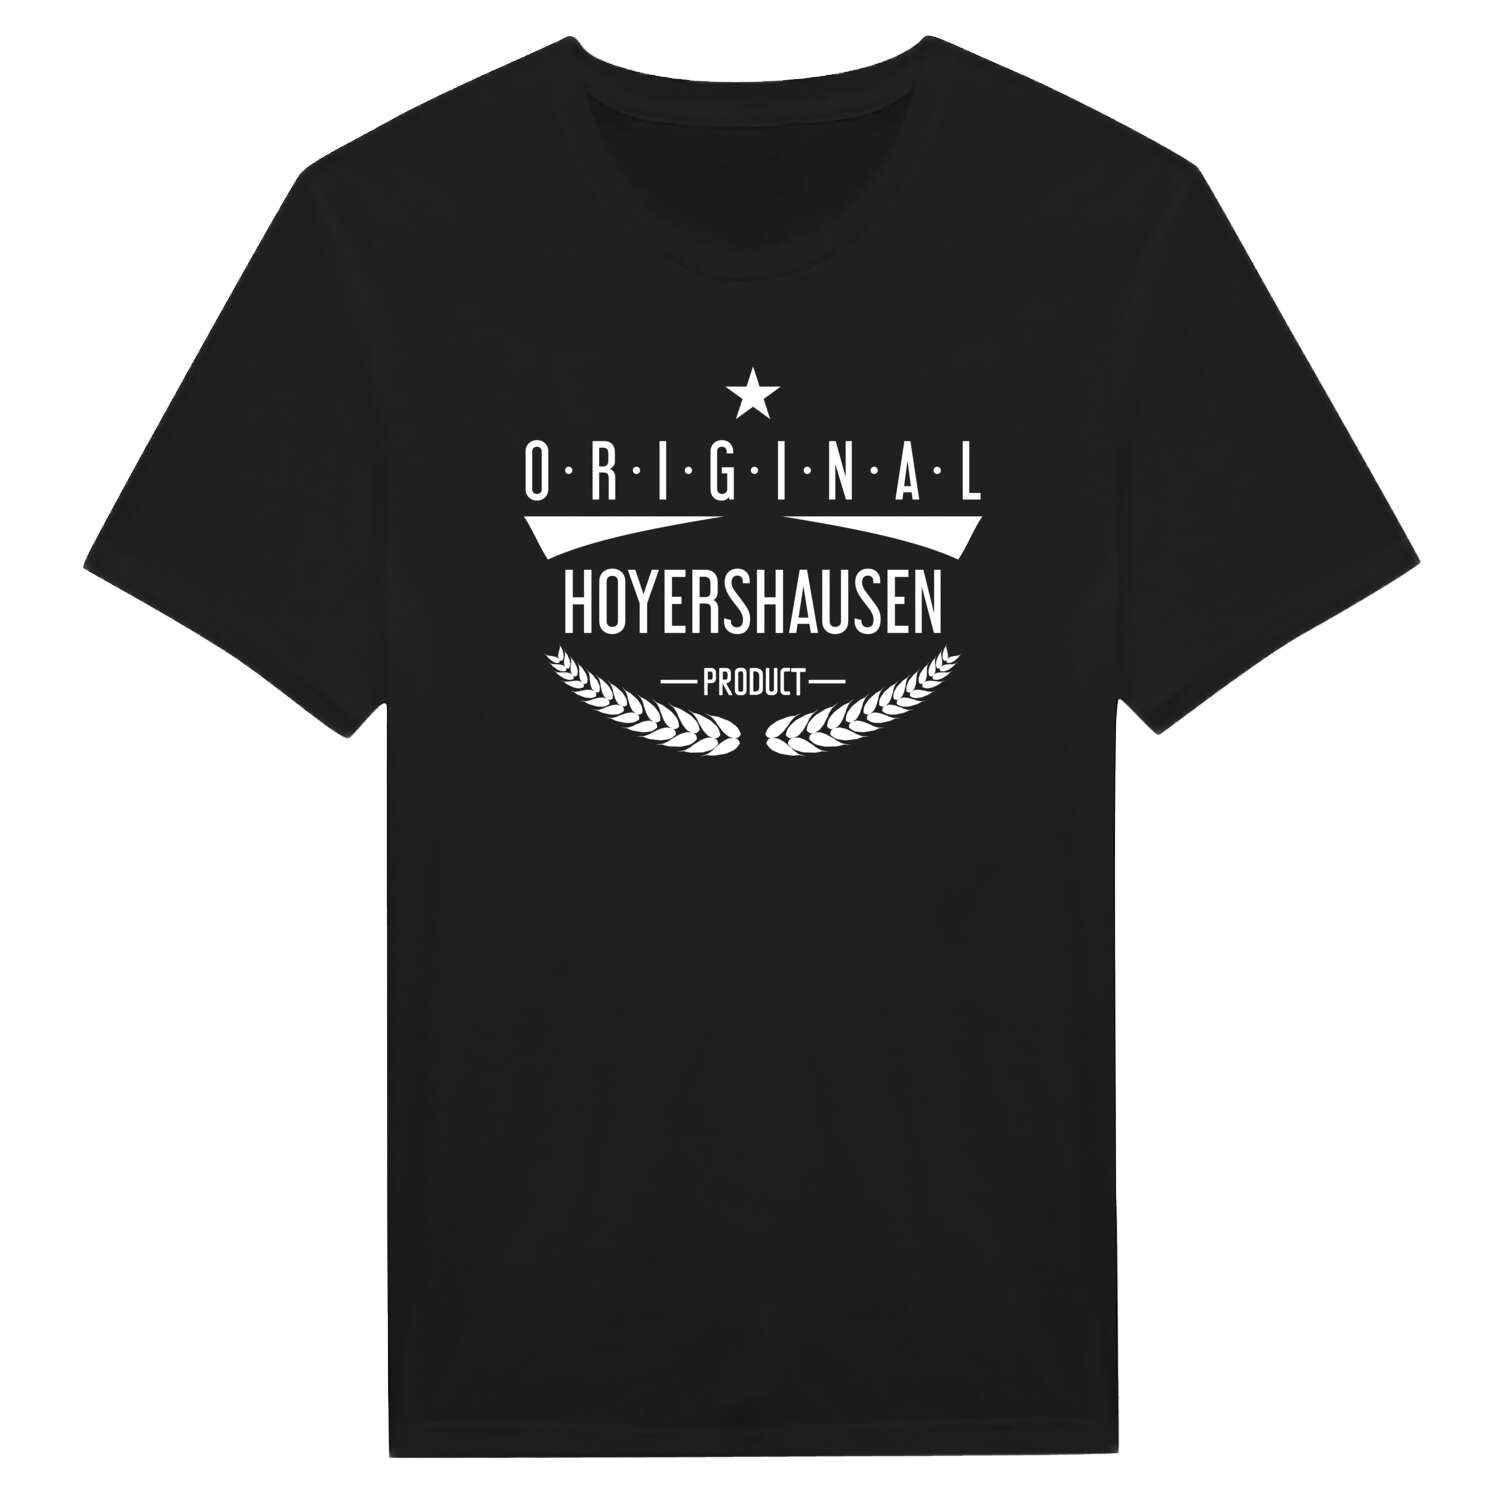 Hoyershausen T-Shirt »Original Product«